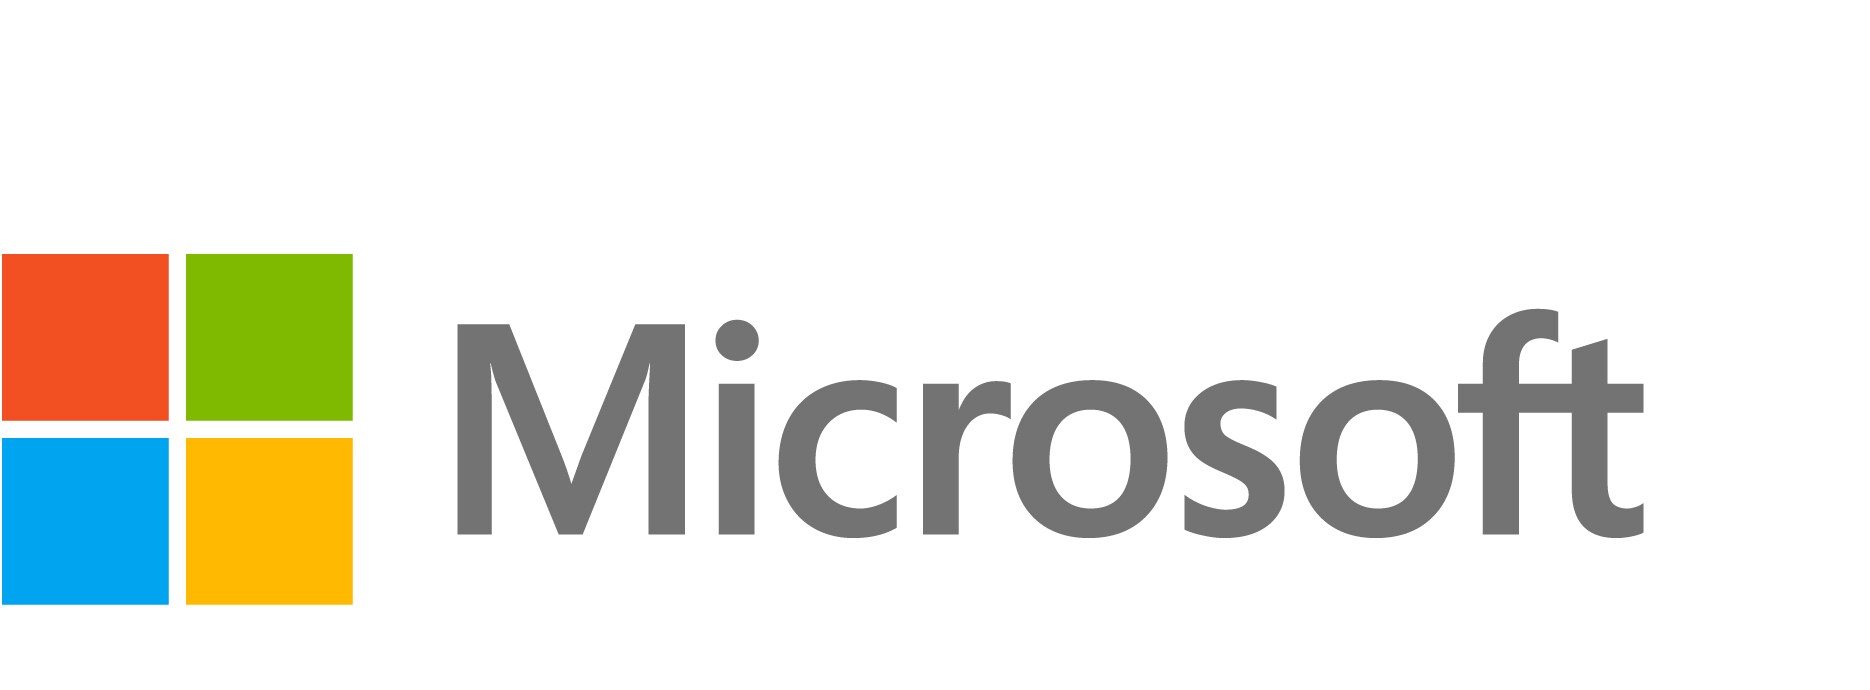 Microsoft Windows Remote Desktop Services - assurance logiciel - 1 licence d'accès client périphérique